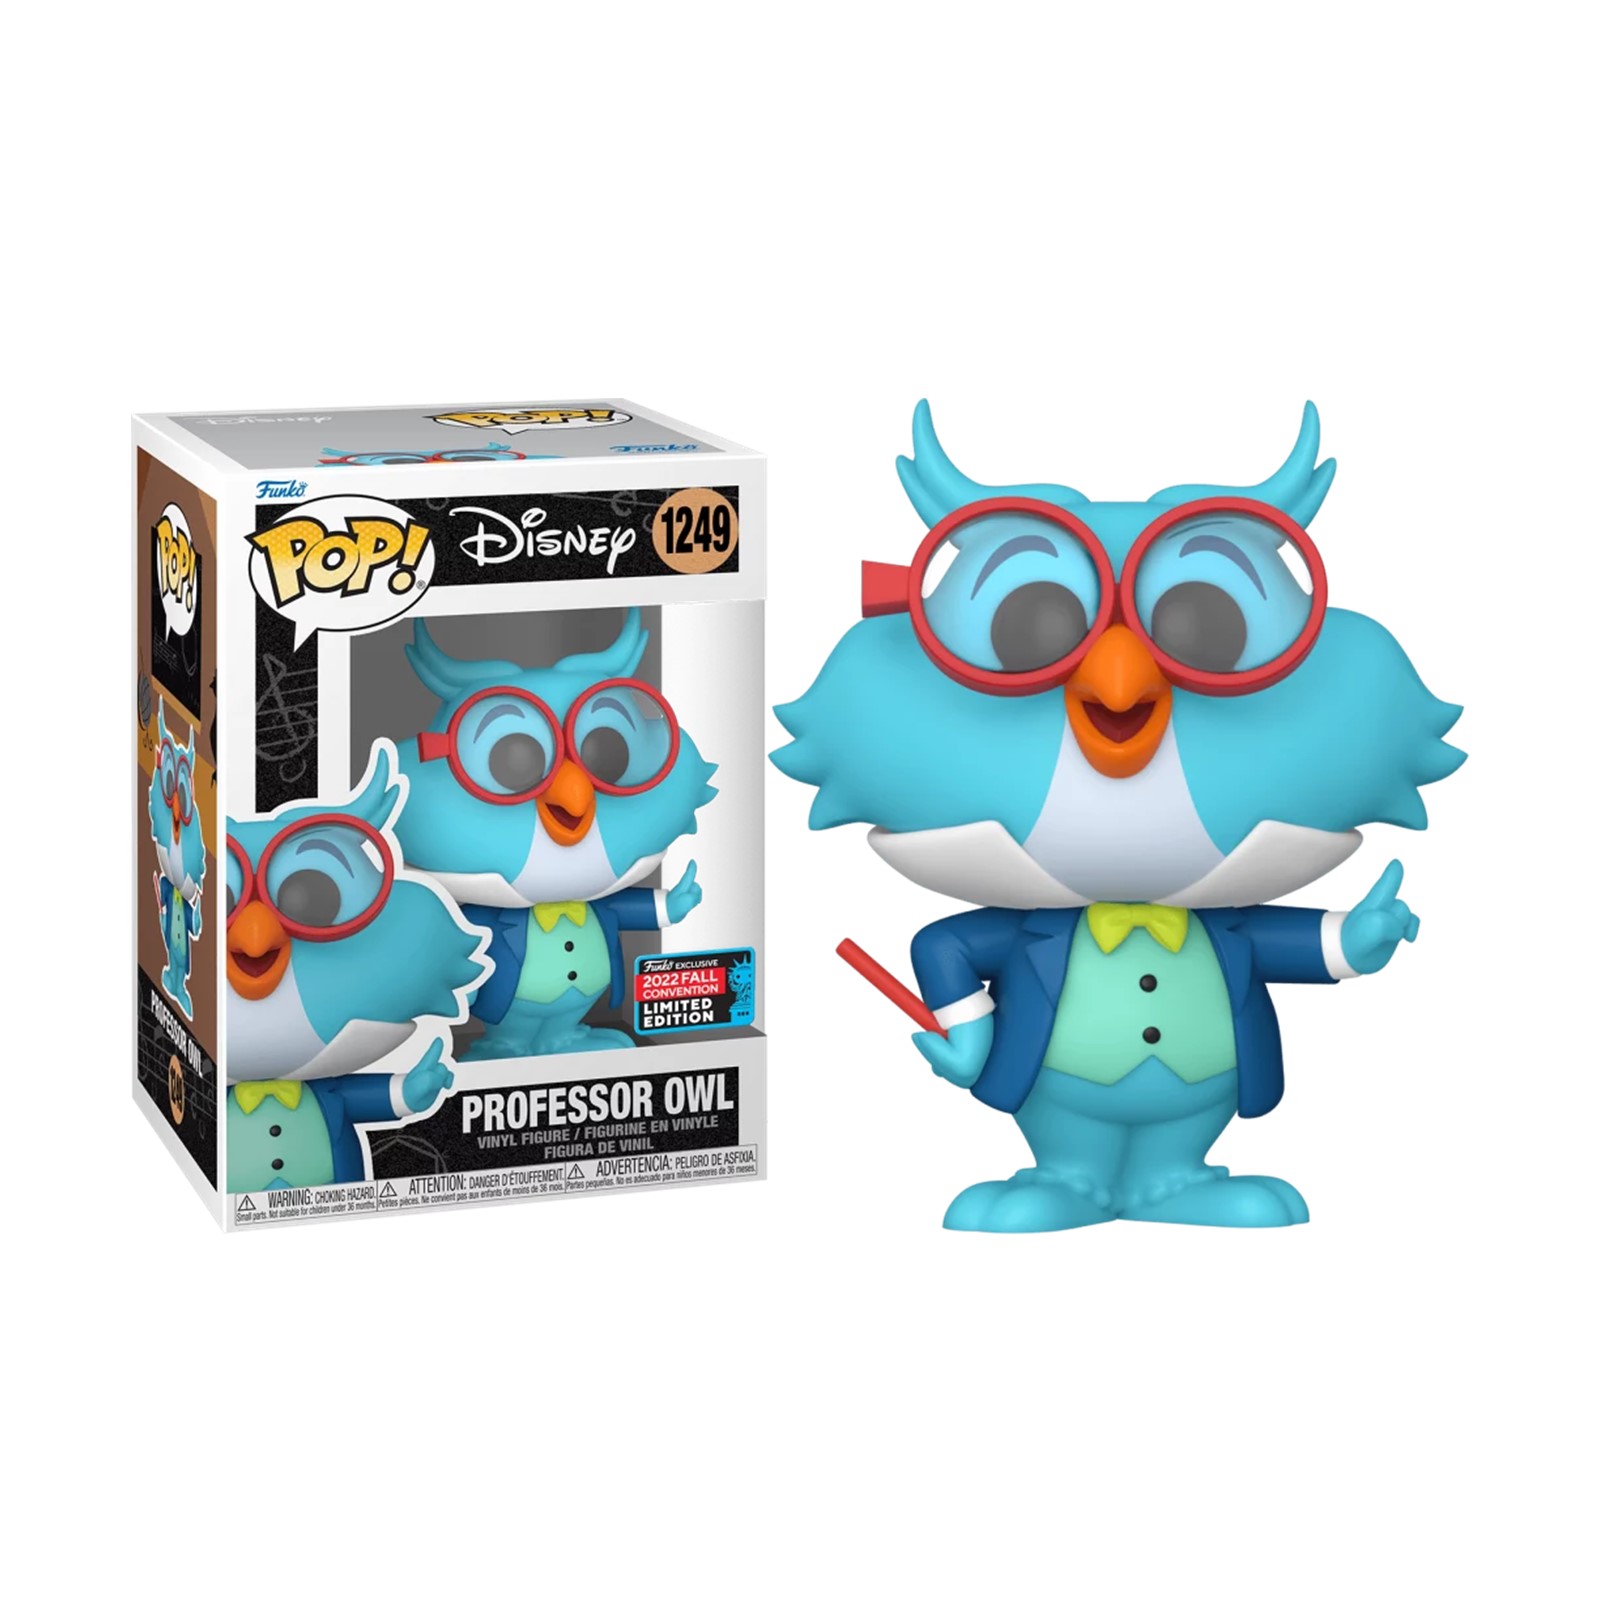 Funko Pop Disney Professeur Owl exclusive – 1249